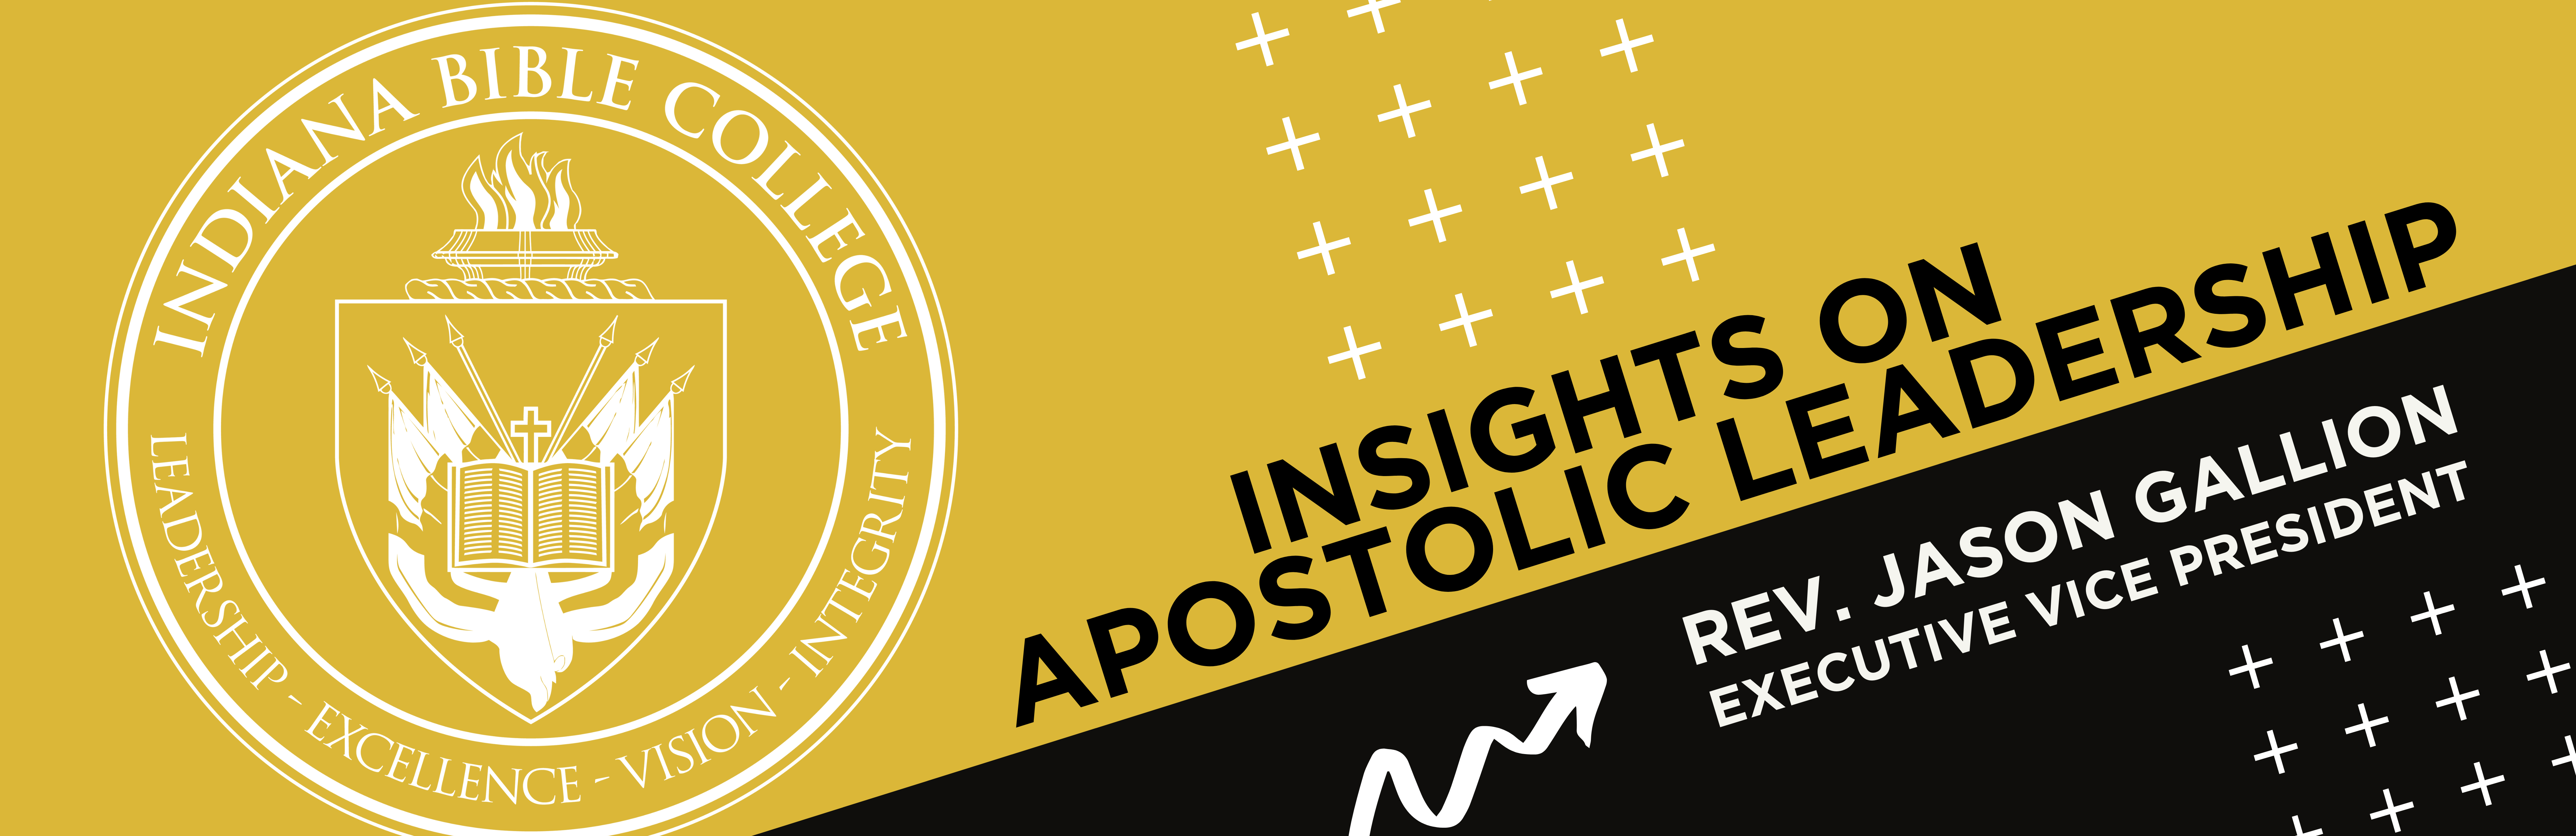 Insights on Apostolic Leadership – Jason Gallion